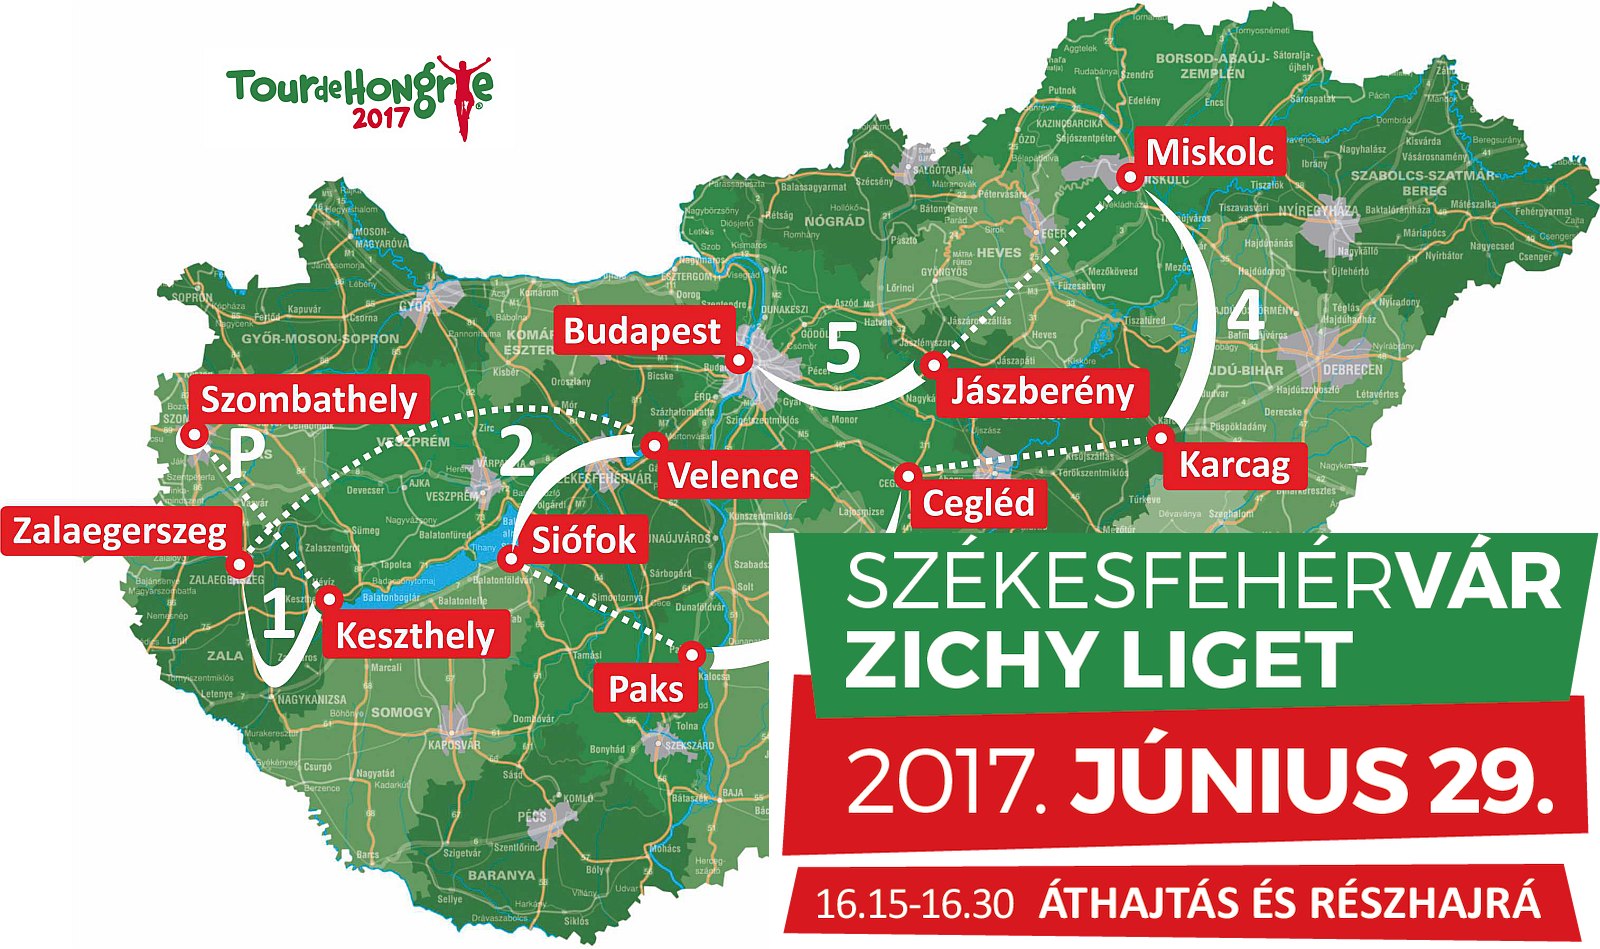 Kerékpáros programokkal várjuk csütörtökön délután Fehérváron a Tour de Hongrie mezőnyét